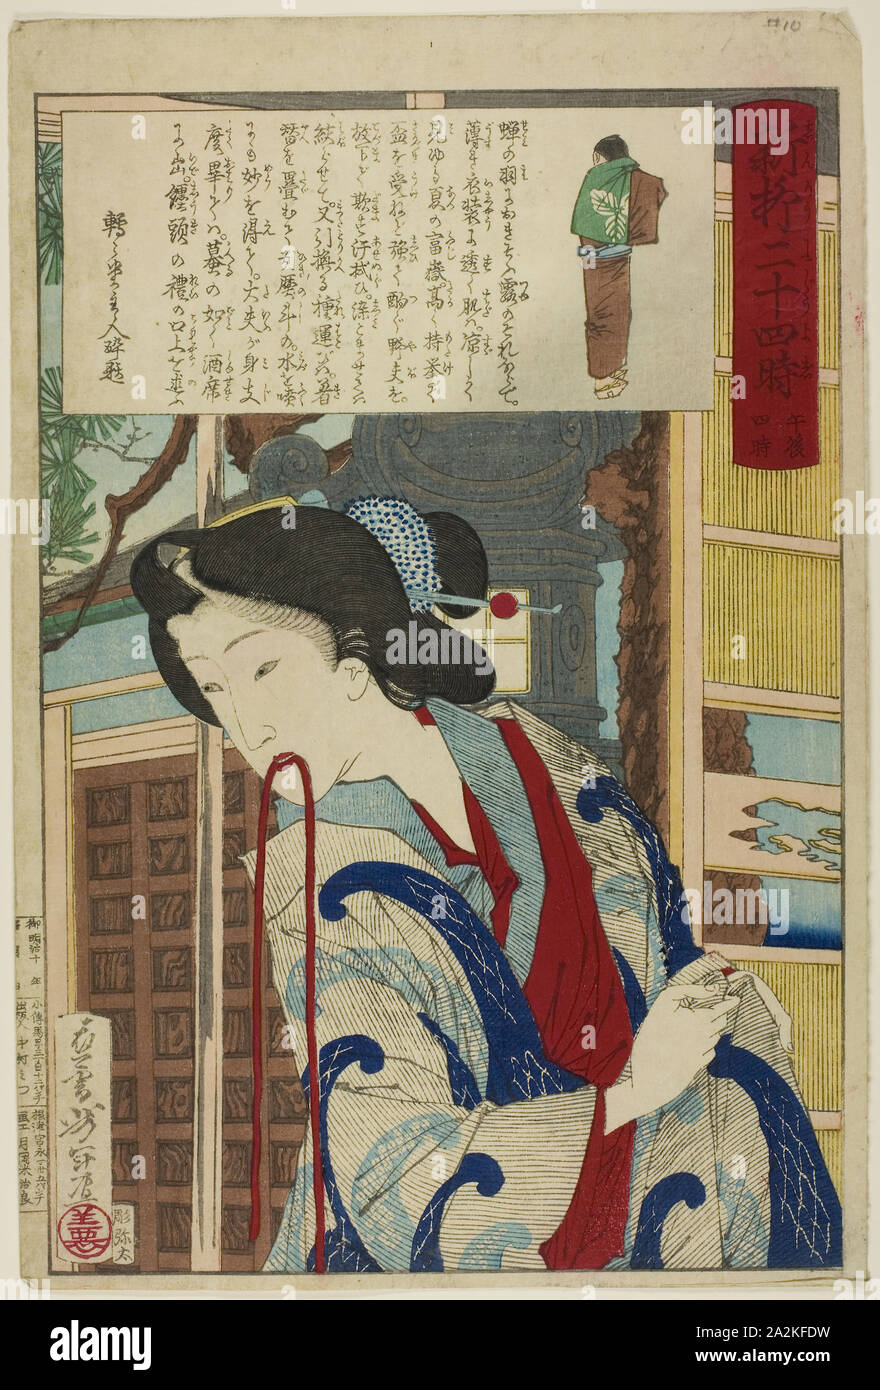 16:00, aus der Serie vierundzwanzig Stunden in Shinbashi und Yanagibashi, n.d., Tsukioka Yoshitoshi, Japanisch, 1839 - 1892, Japan, Farbe holzschnitt Stockfoto